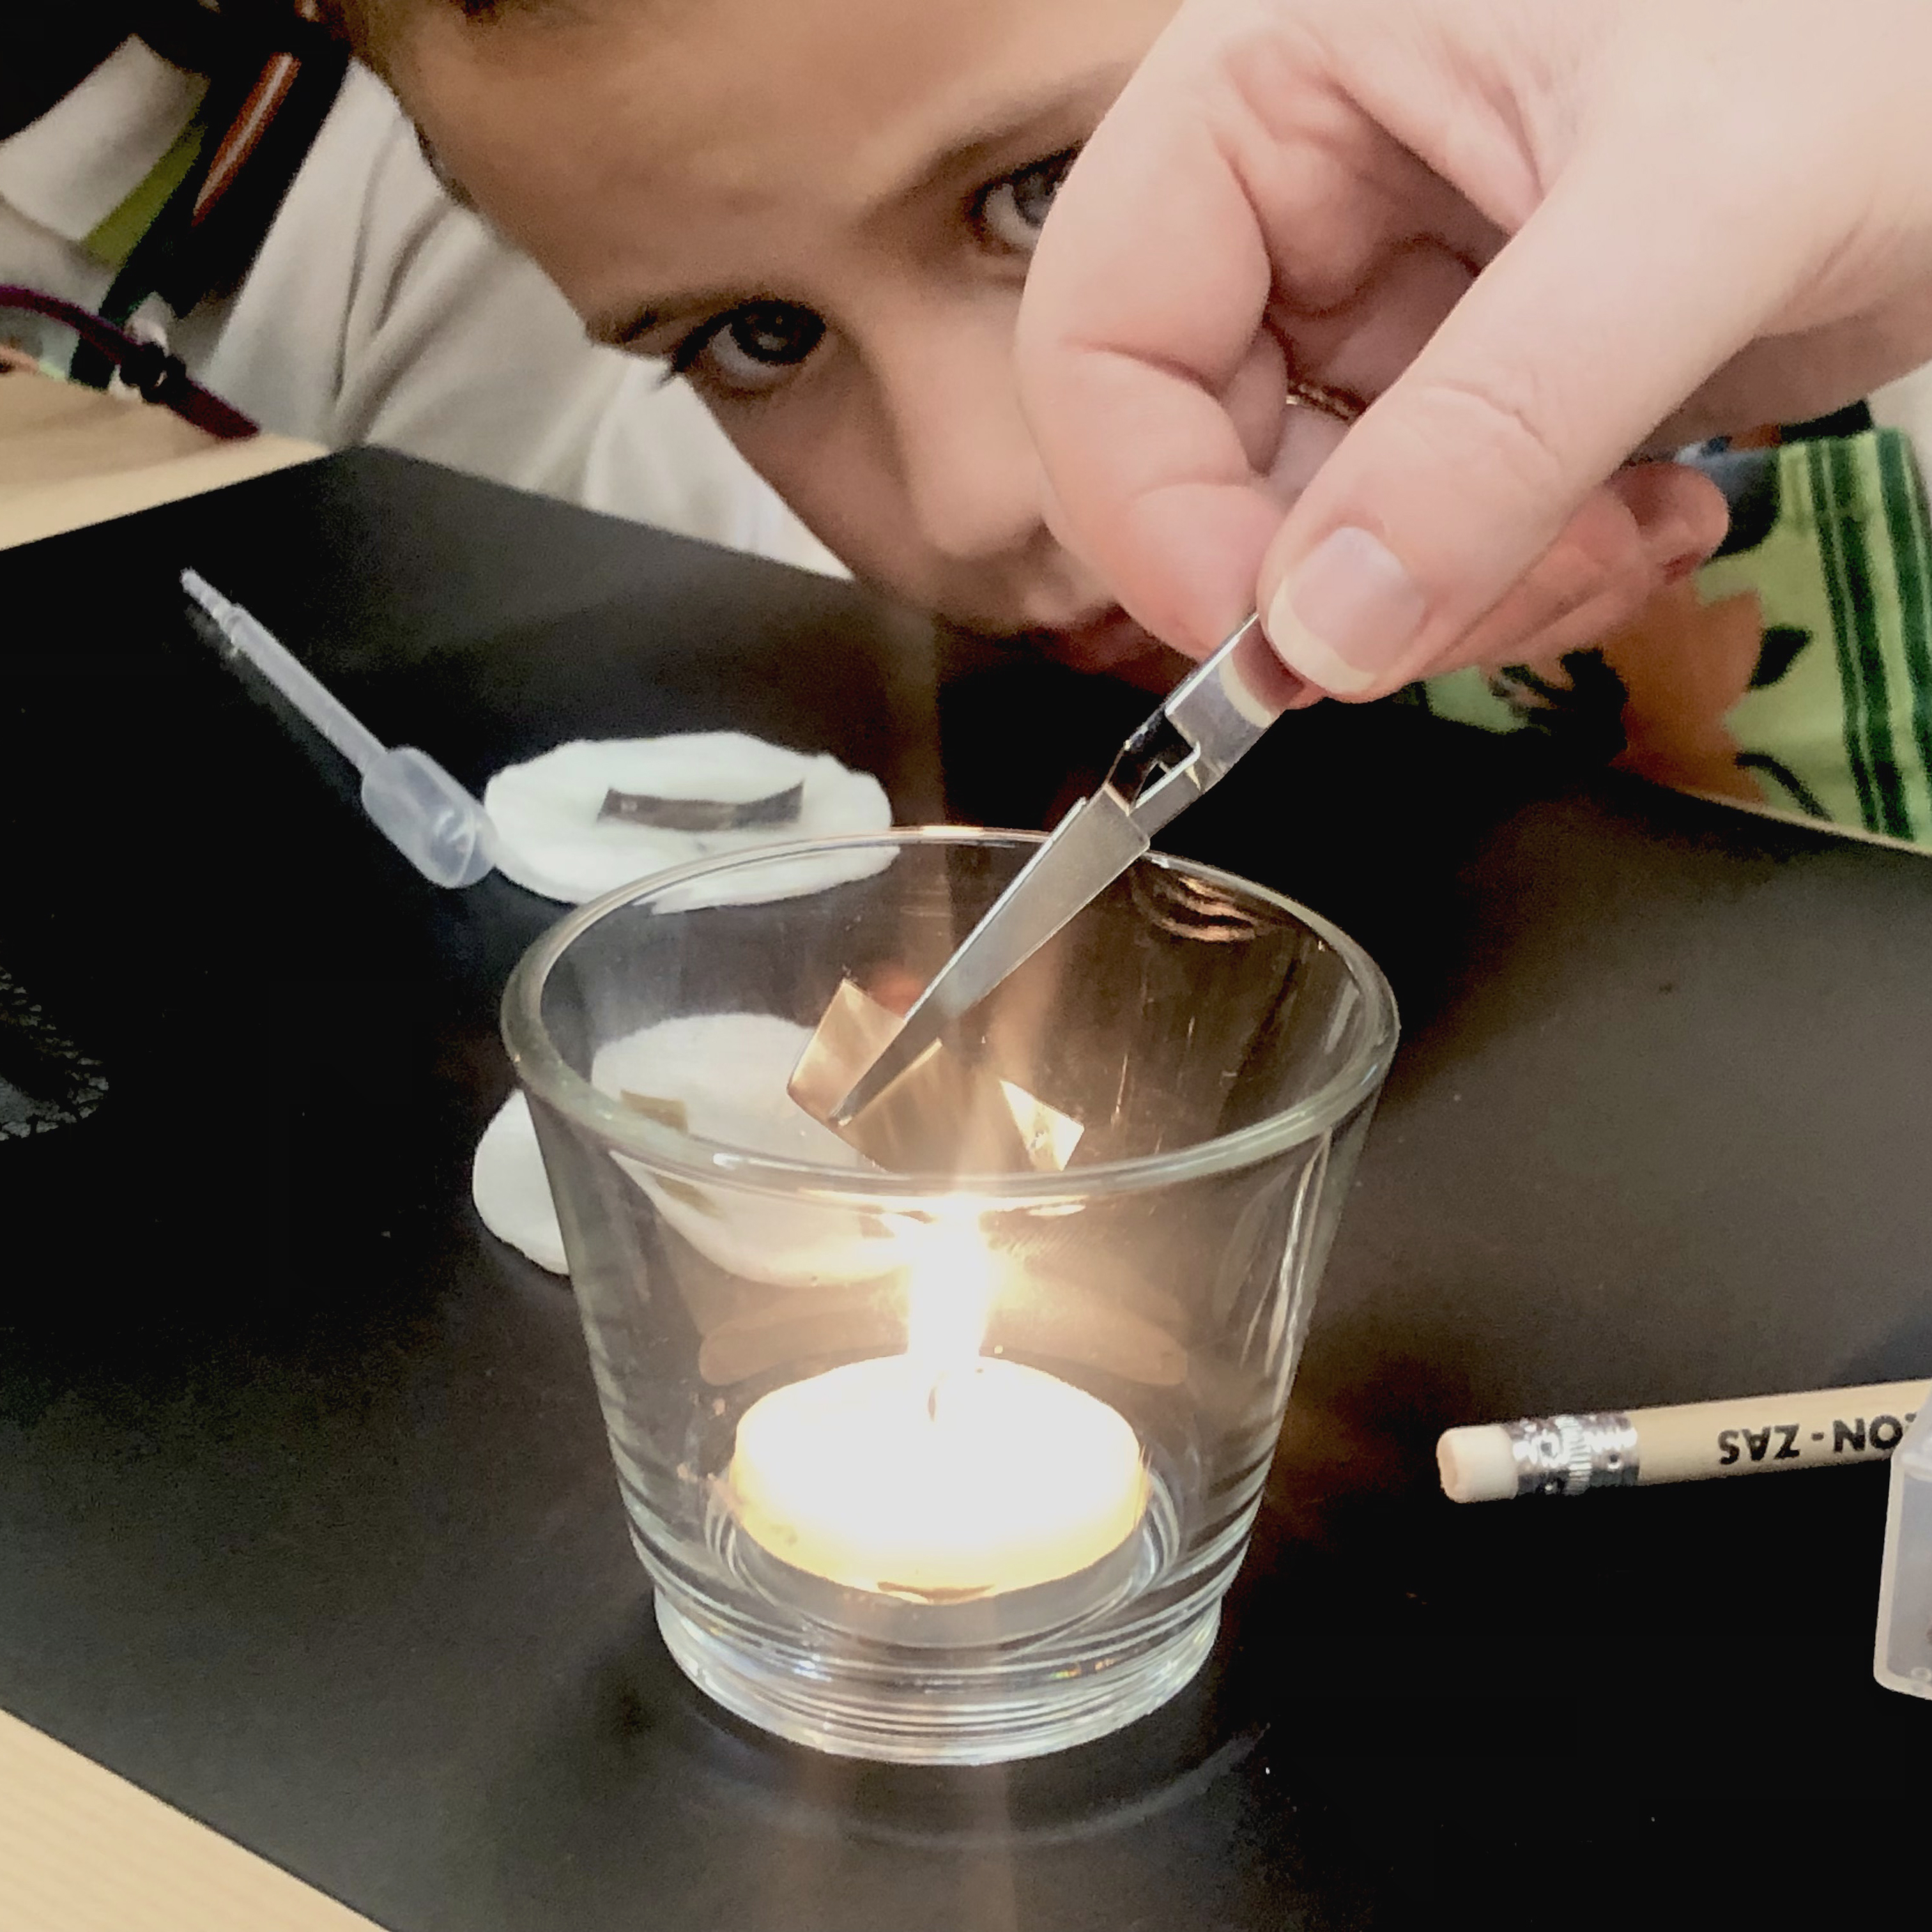 Detalle de una mano exponiendo una muestra de metal al calor de una vela. Un niño lo observa con atención.